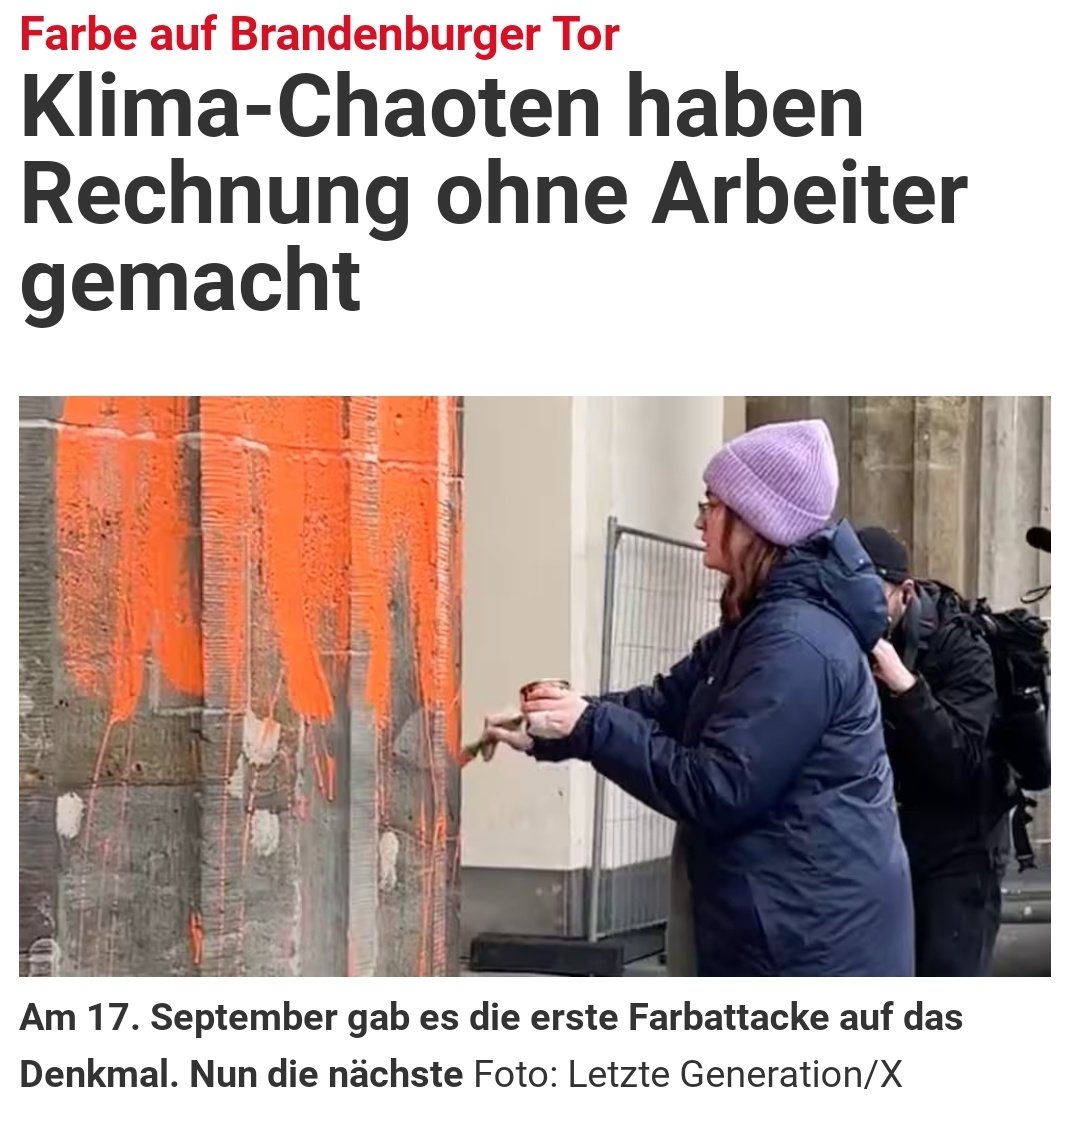 Wegsperren diese Klima-Fanatiker! #Farbanschlag #BrandenburgerTor #KlimaExtremisten 👇

bz-berlin.de/berlin/mitte/k…